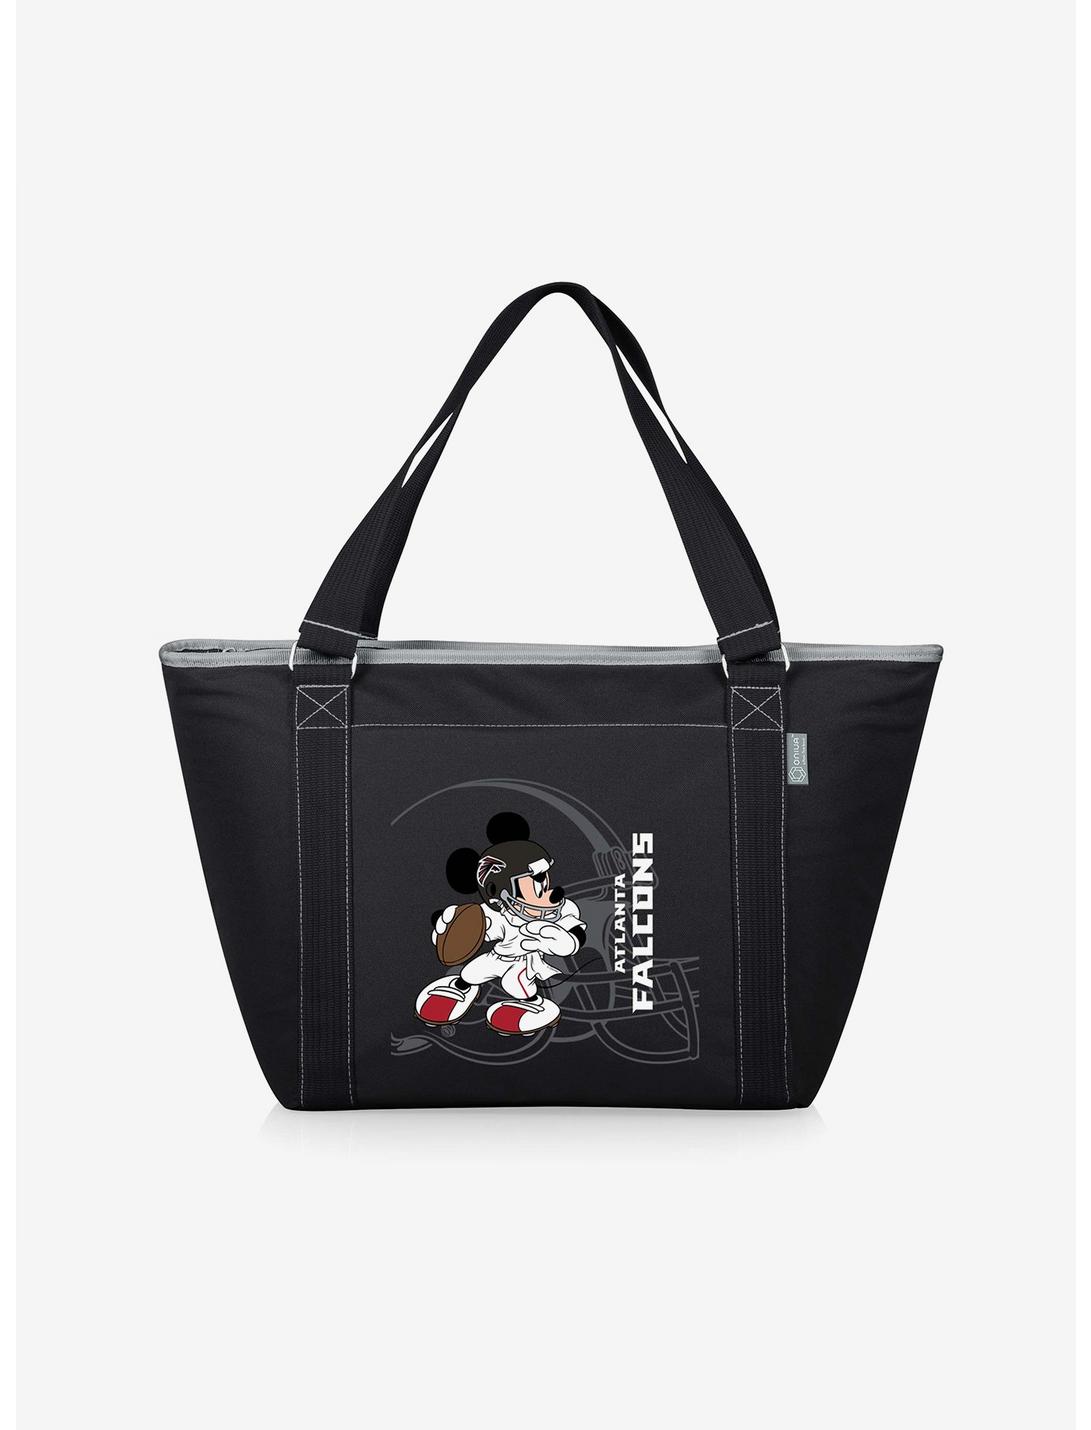 Disney Mickey Mouse NFL ATL Falcons Tote Cooler Bag, , hi-res